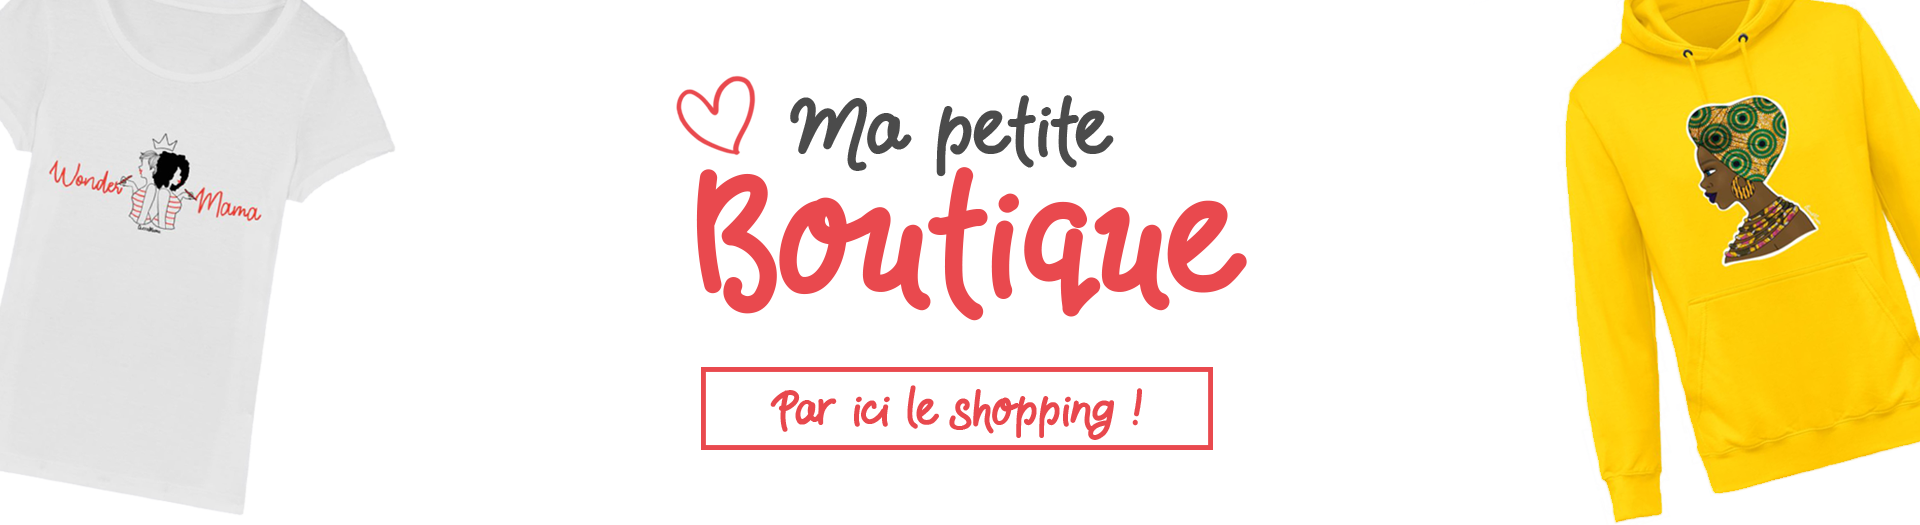 banniere_boutique_tunetoo3